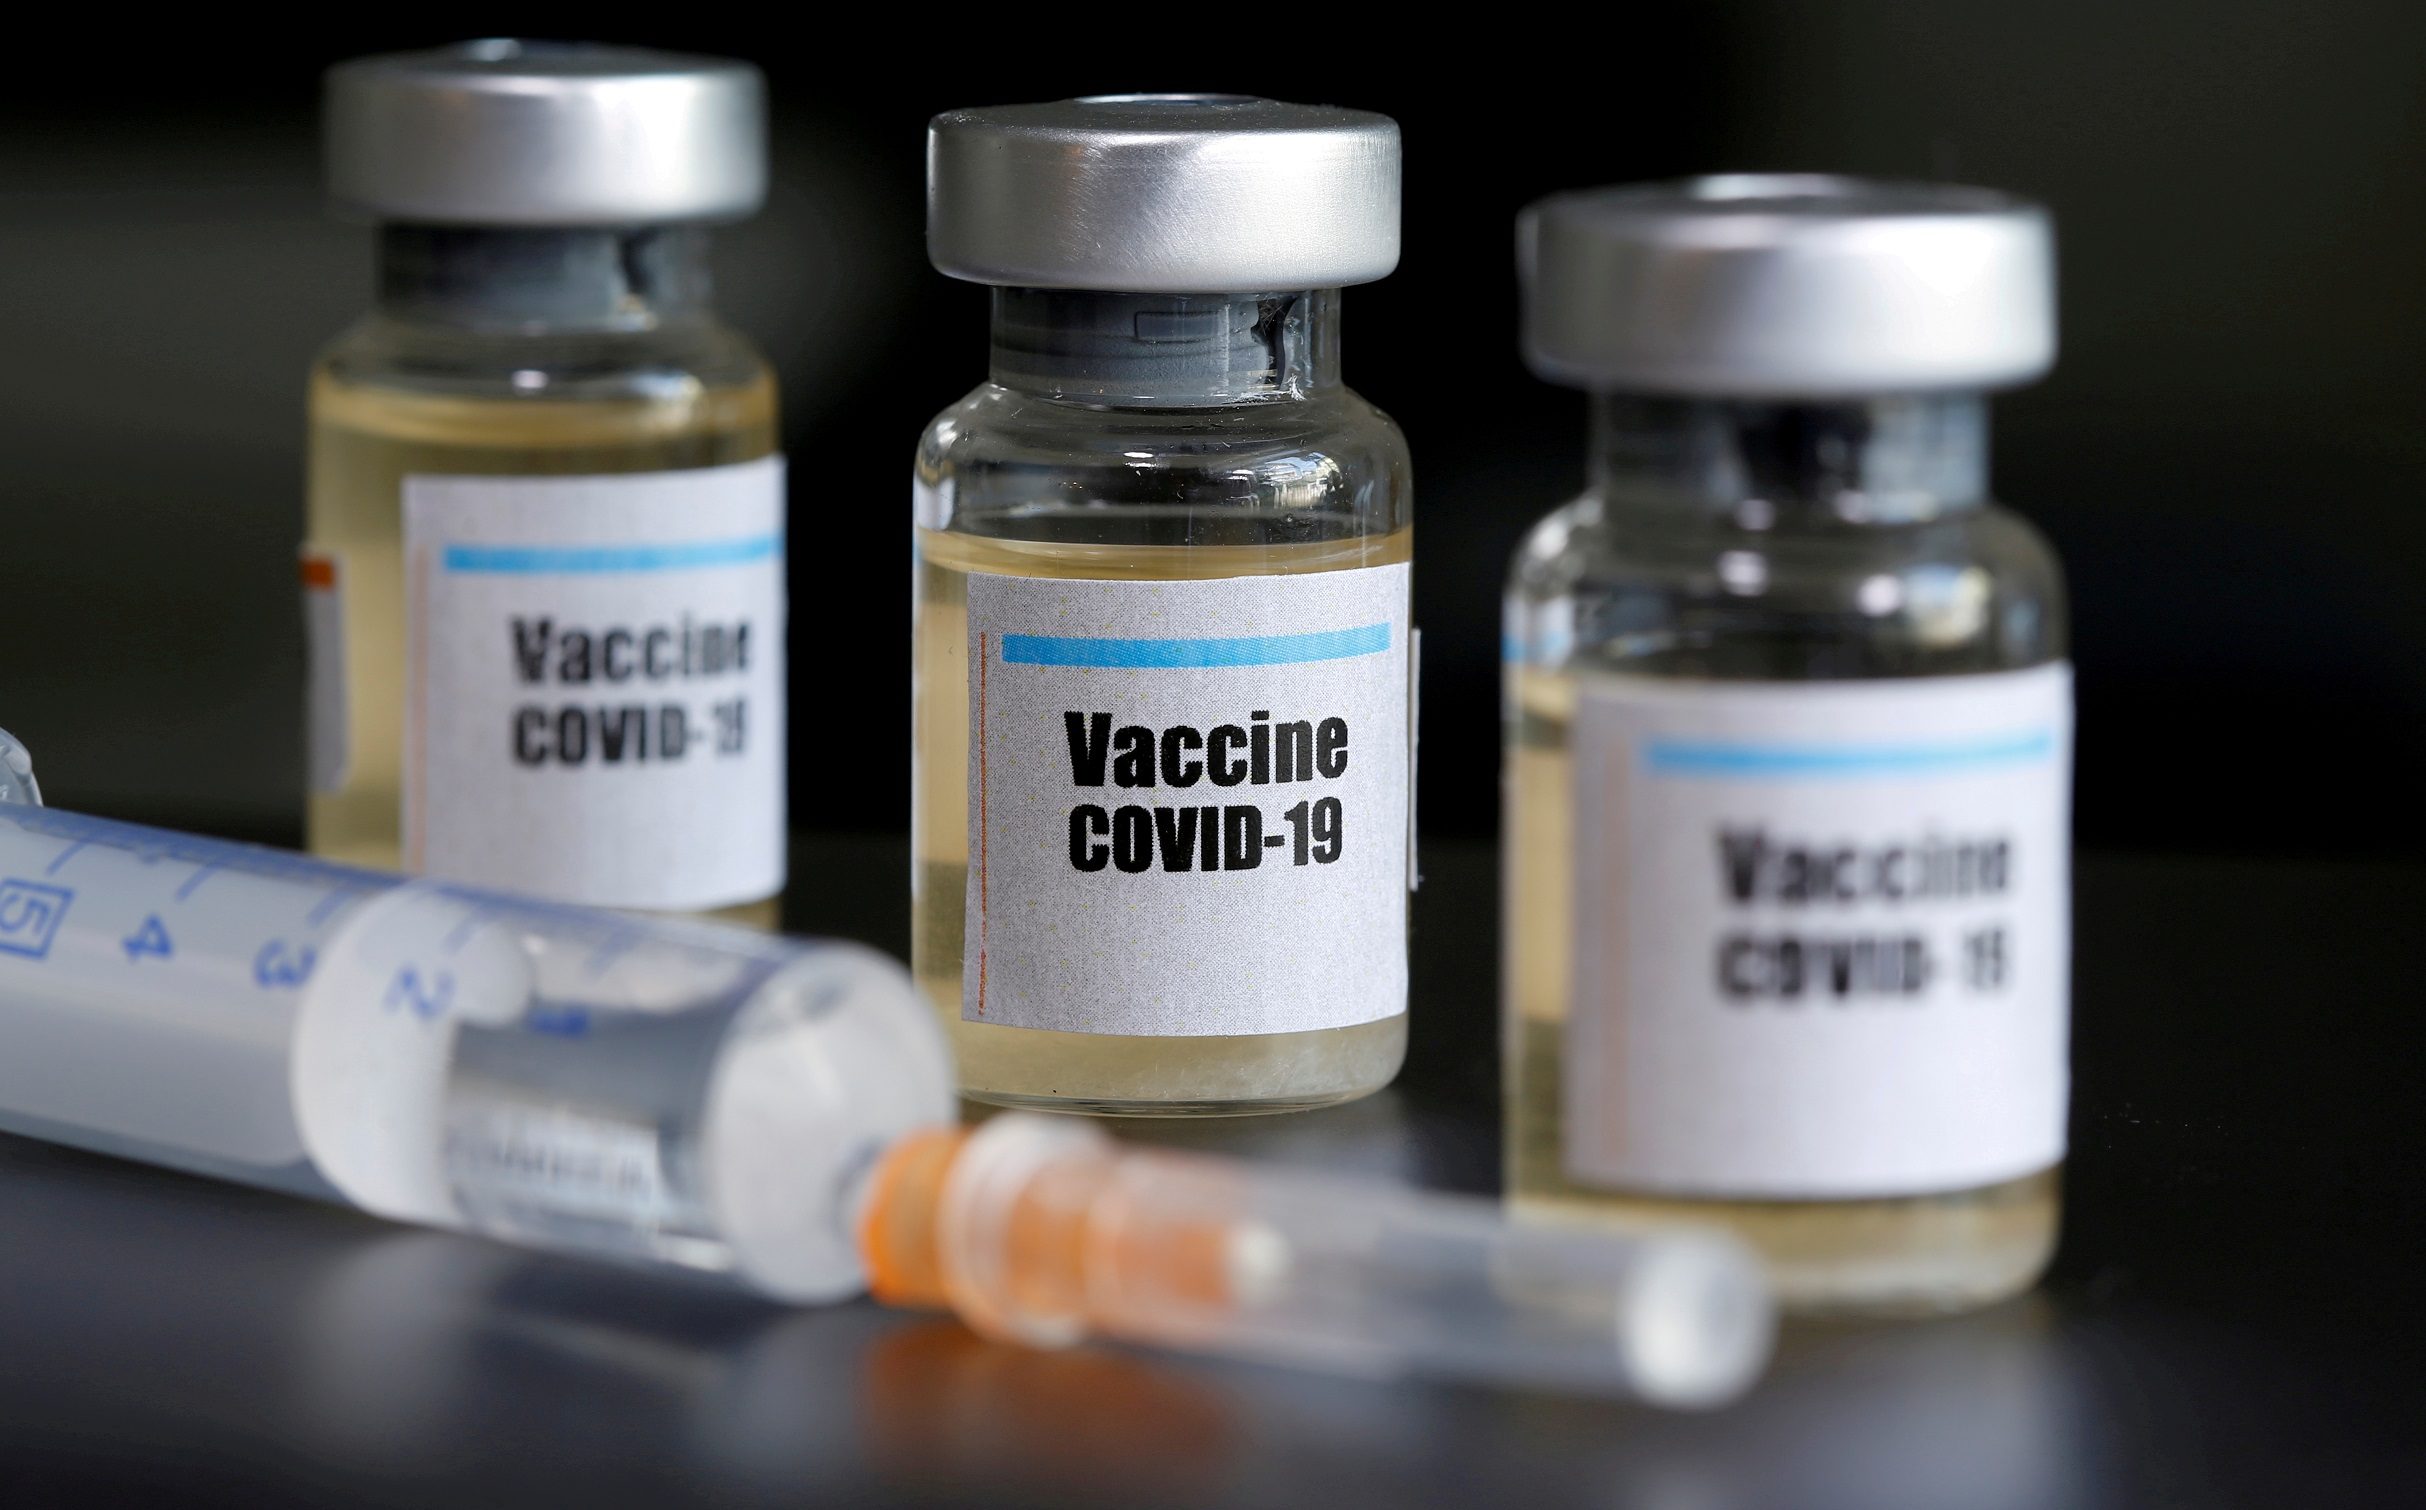 ม.ออกซ์ฟอร์ด ยอมรับ วัคซีน โควิด-19 มีโอกาสล้มเหลวครึ่งต่อครึ่ง